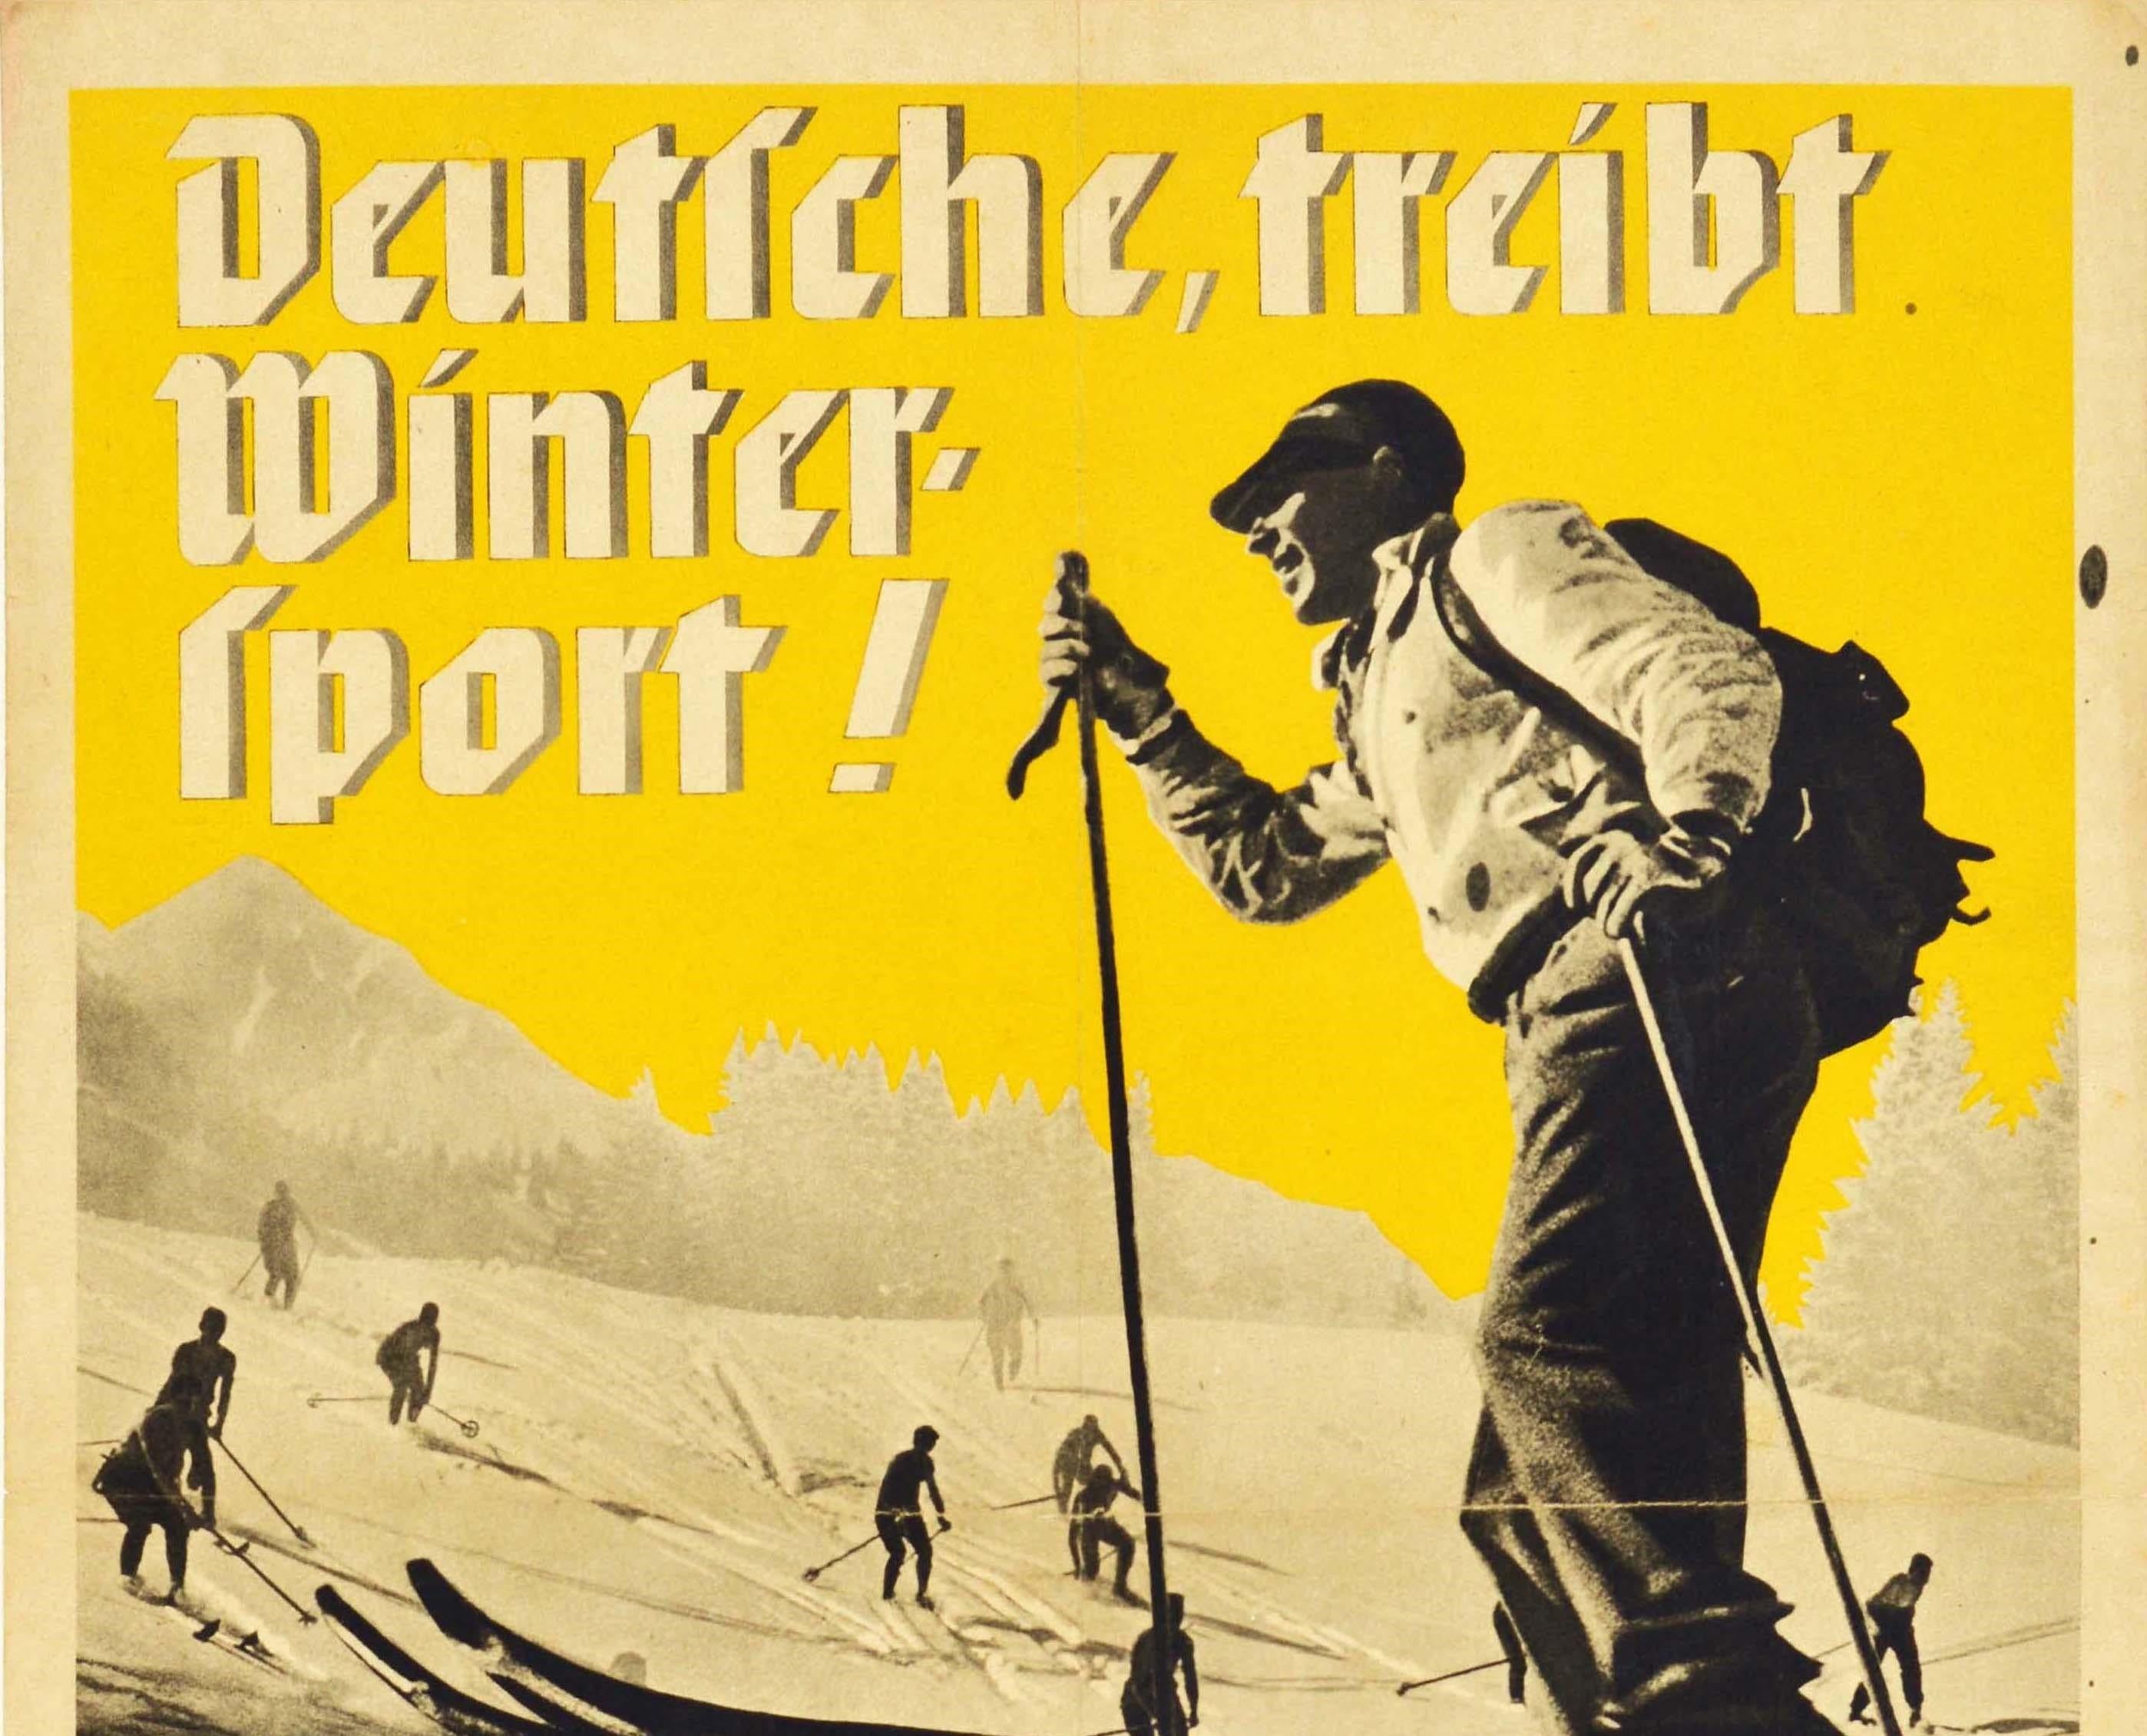 Originalplakat für eine Werbewoche des Wintersports vom 11. bis 18. November 1934 - Deutsche, treibt Wintersport! / Deutsche, treibt Wintersport! - mit einem lächelnden Mann, der im Vordergrund einen Ski anhebt, und Skifahrern, die im Hintergrund